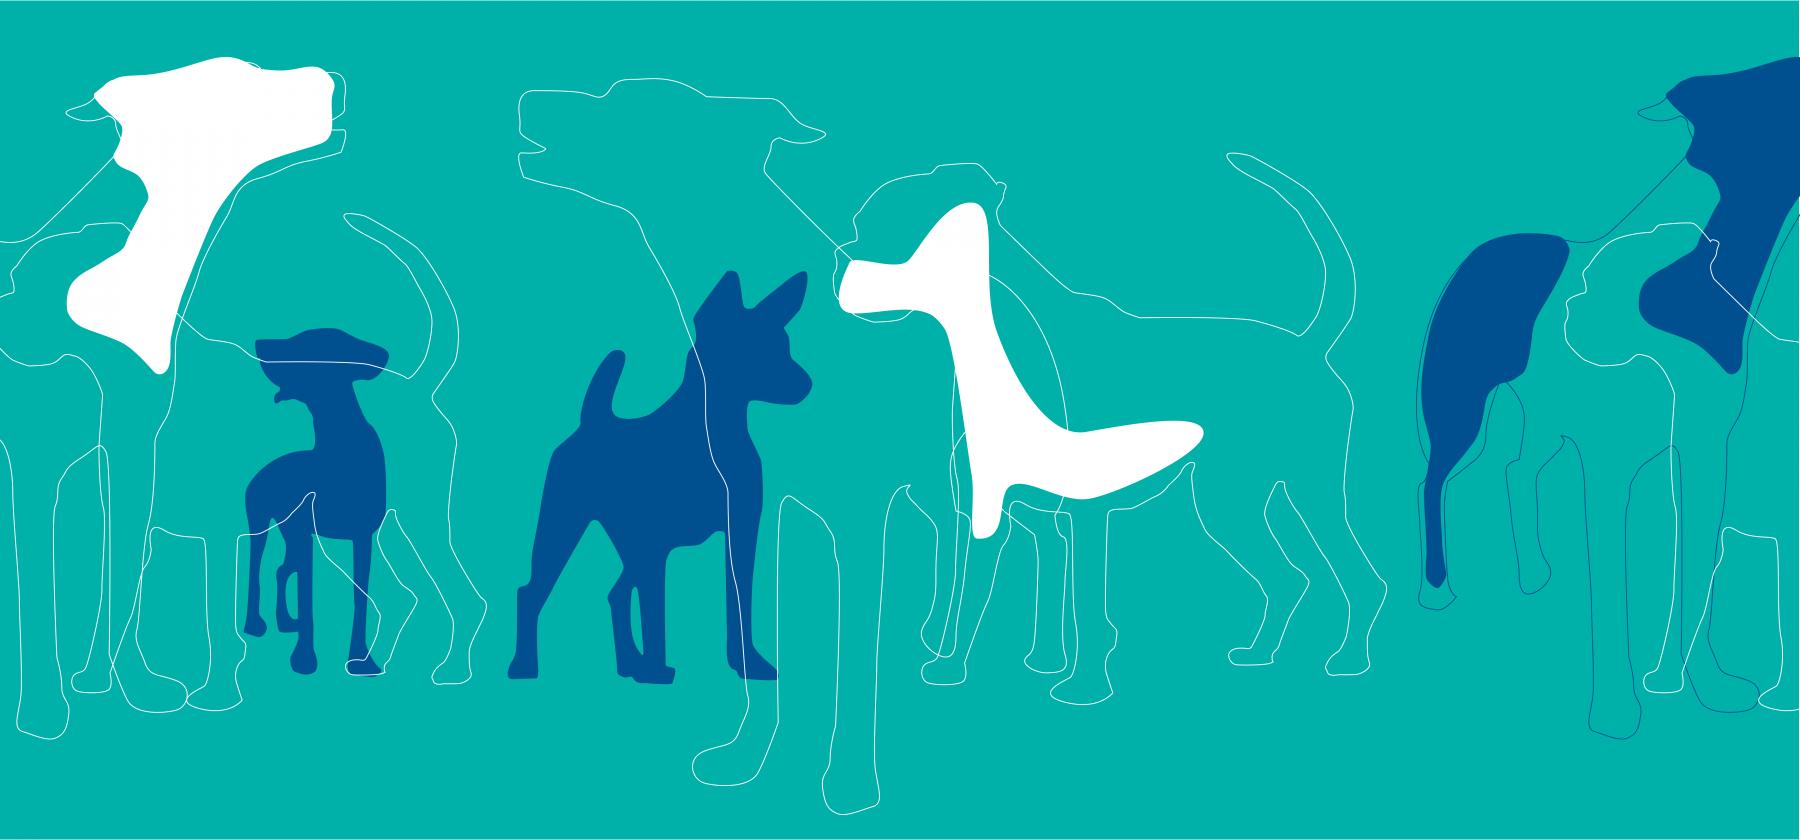 Helsinki Winner -koiranäyttelyn logo turkoosilla taustalla.